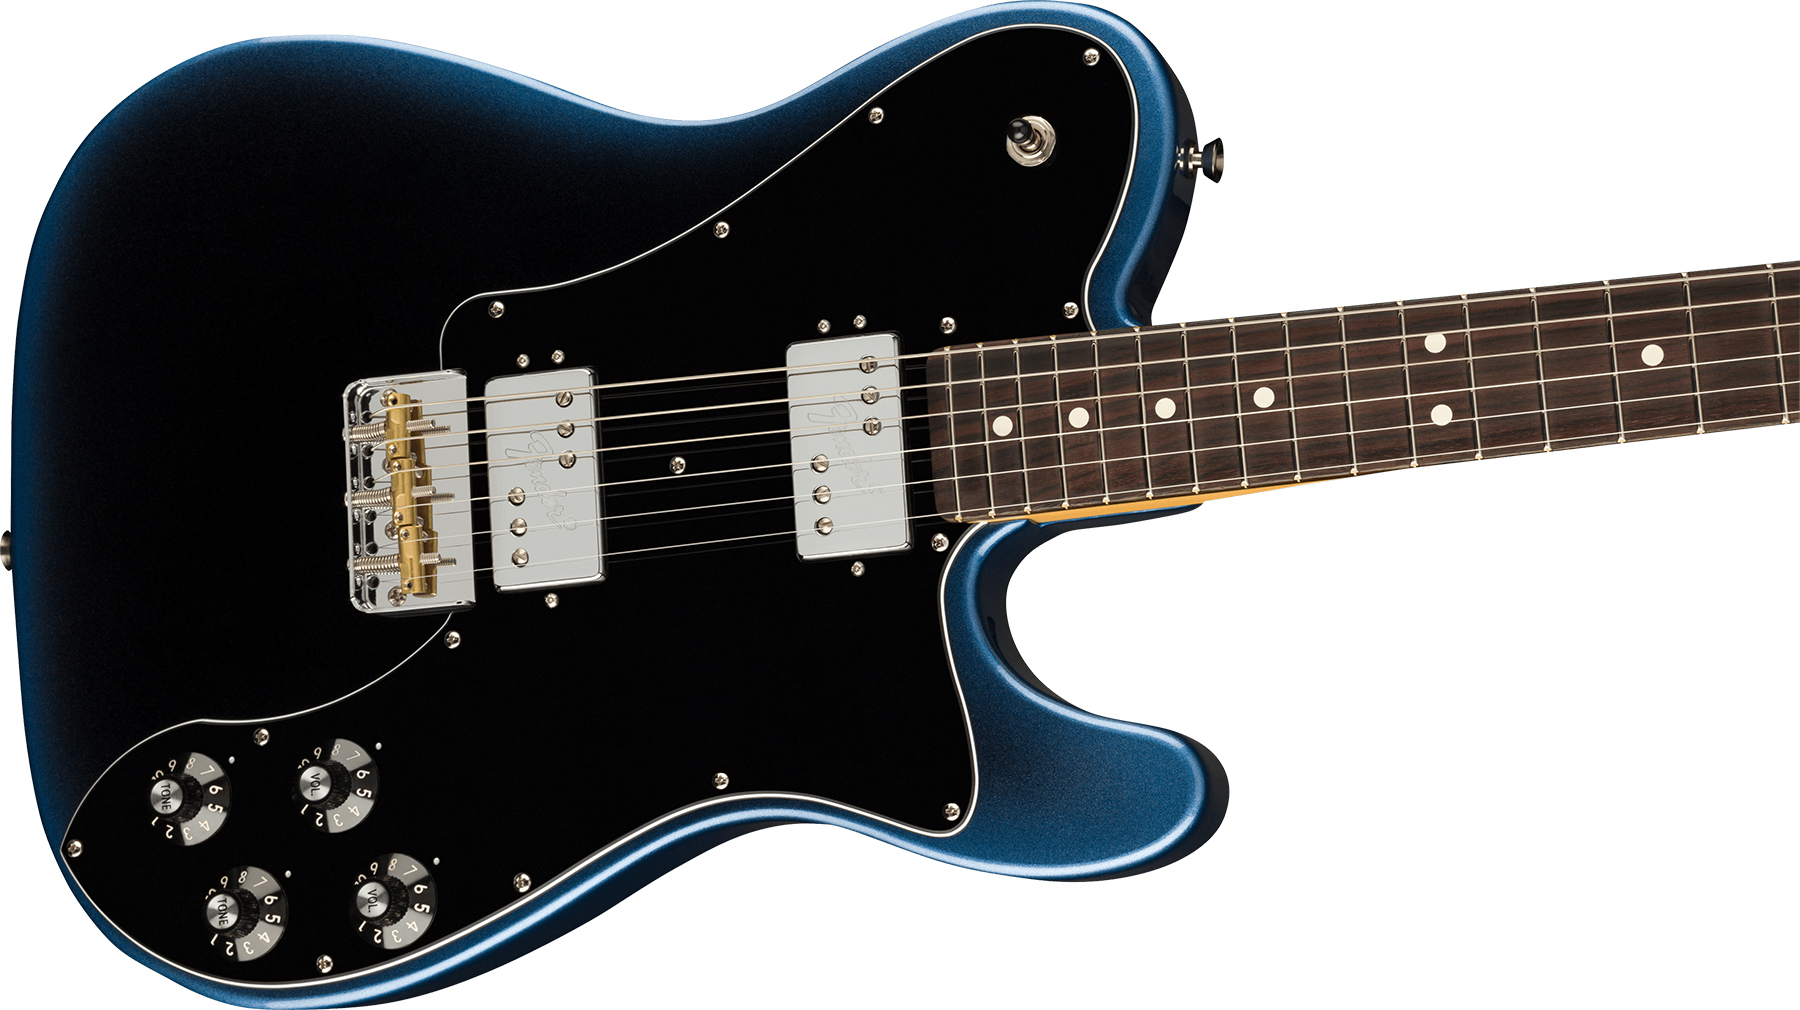 Fender Tele Deluxe American Professional Ii Usa Rw - Dark Night - Guitarra eléctrica con forma de tel - Variation 2